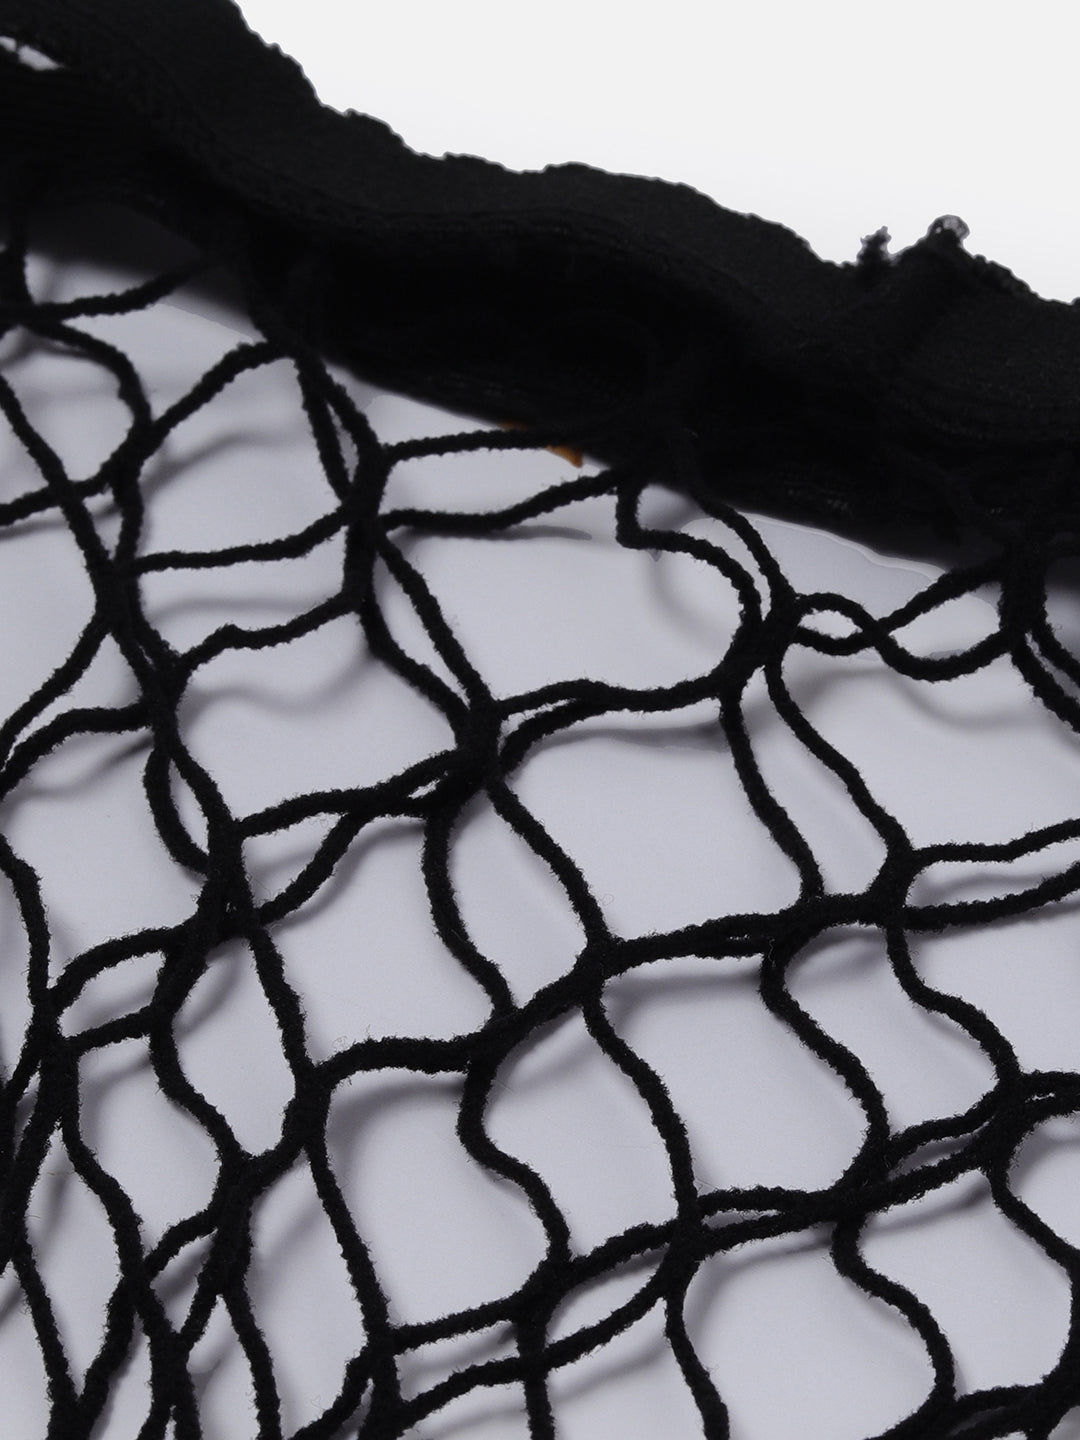 Black Fishnet Stockings